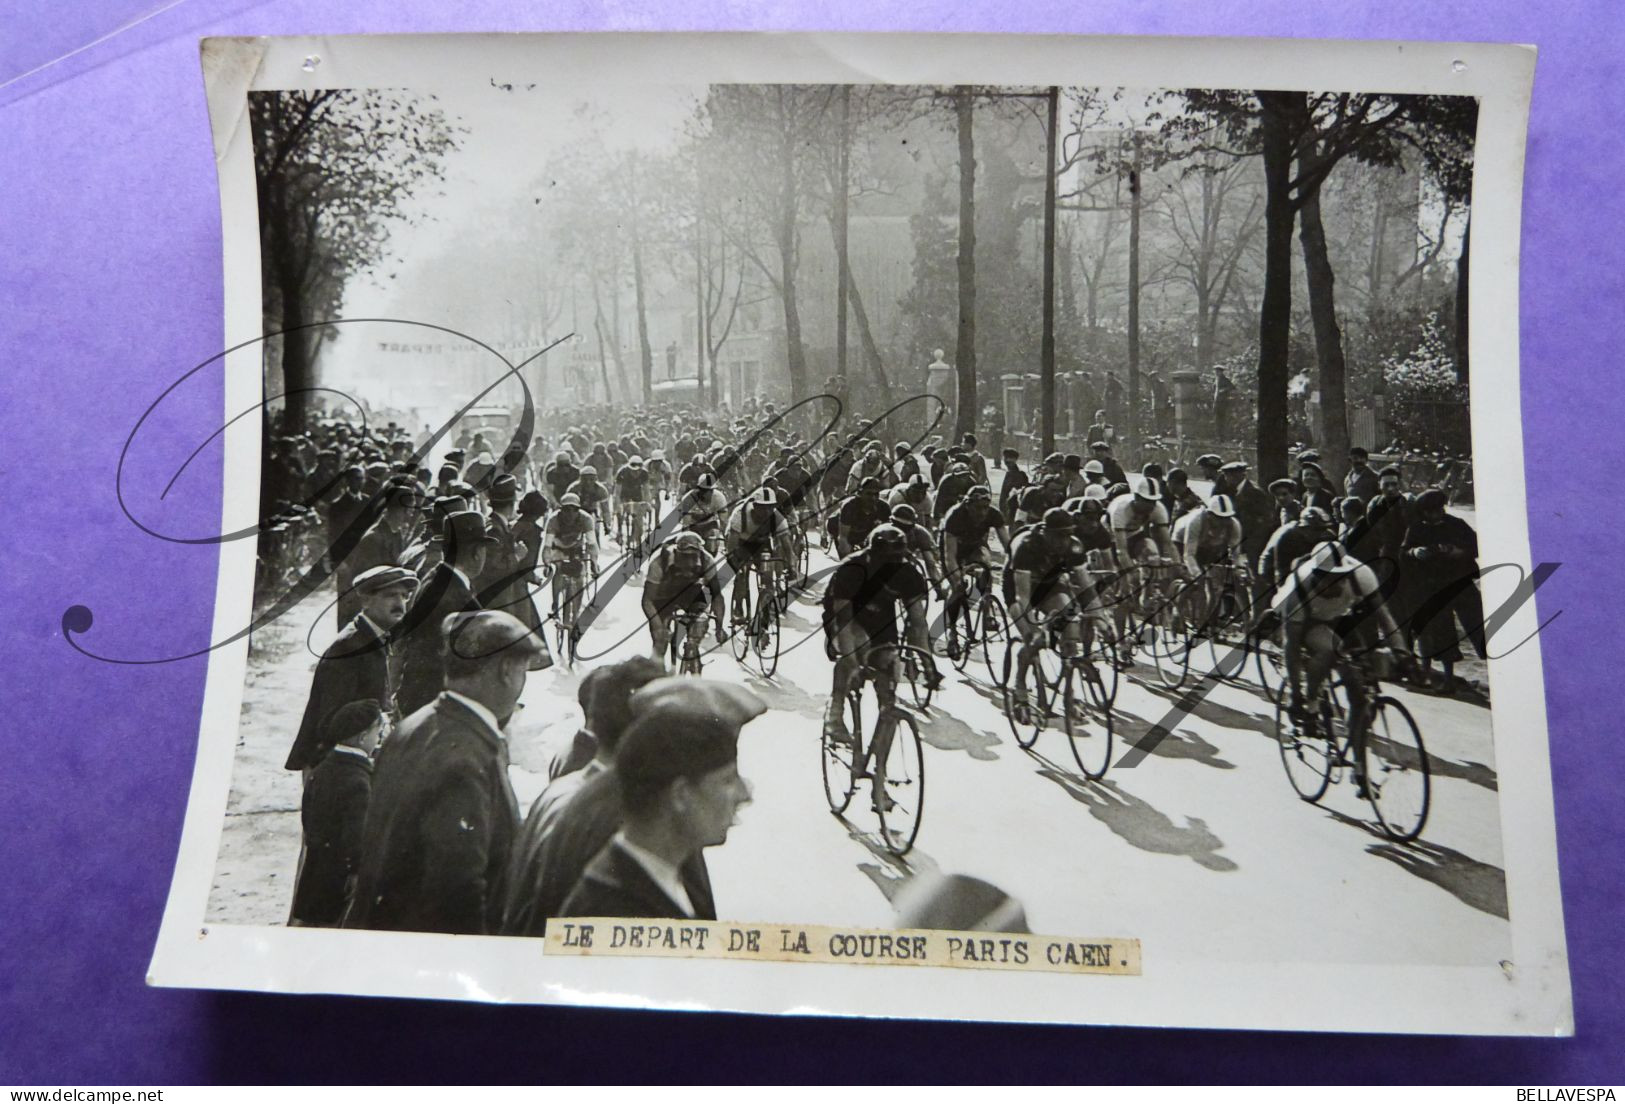 LOT Tour de France Ronde van Frankrijk Bernard PASSANT A.MAGNE-MANCLAIR-  Photo de  Presse x 8 piece/stuks